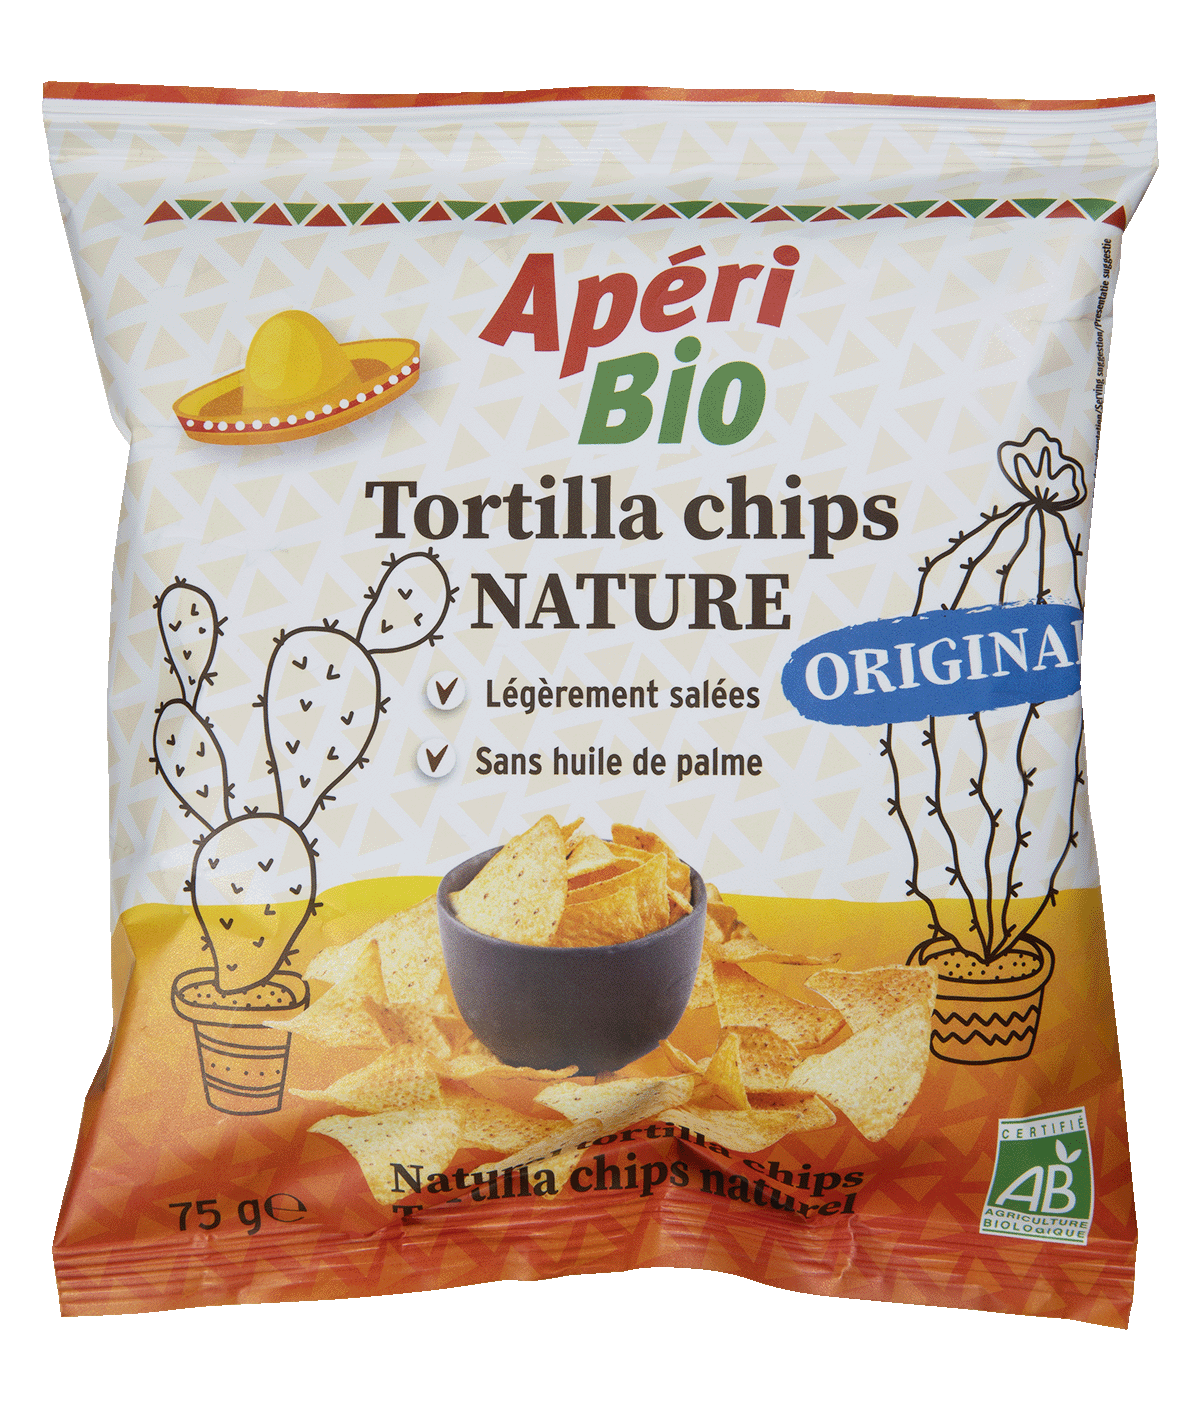 Plain tortilla chips